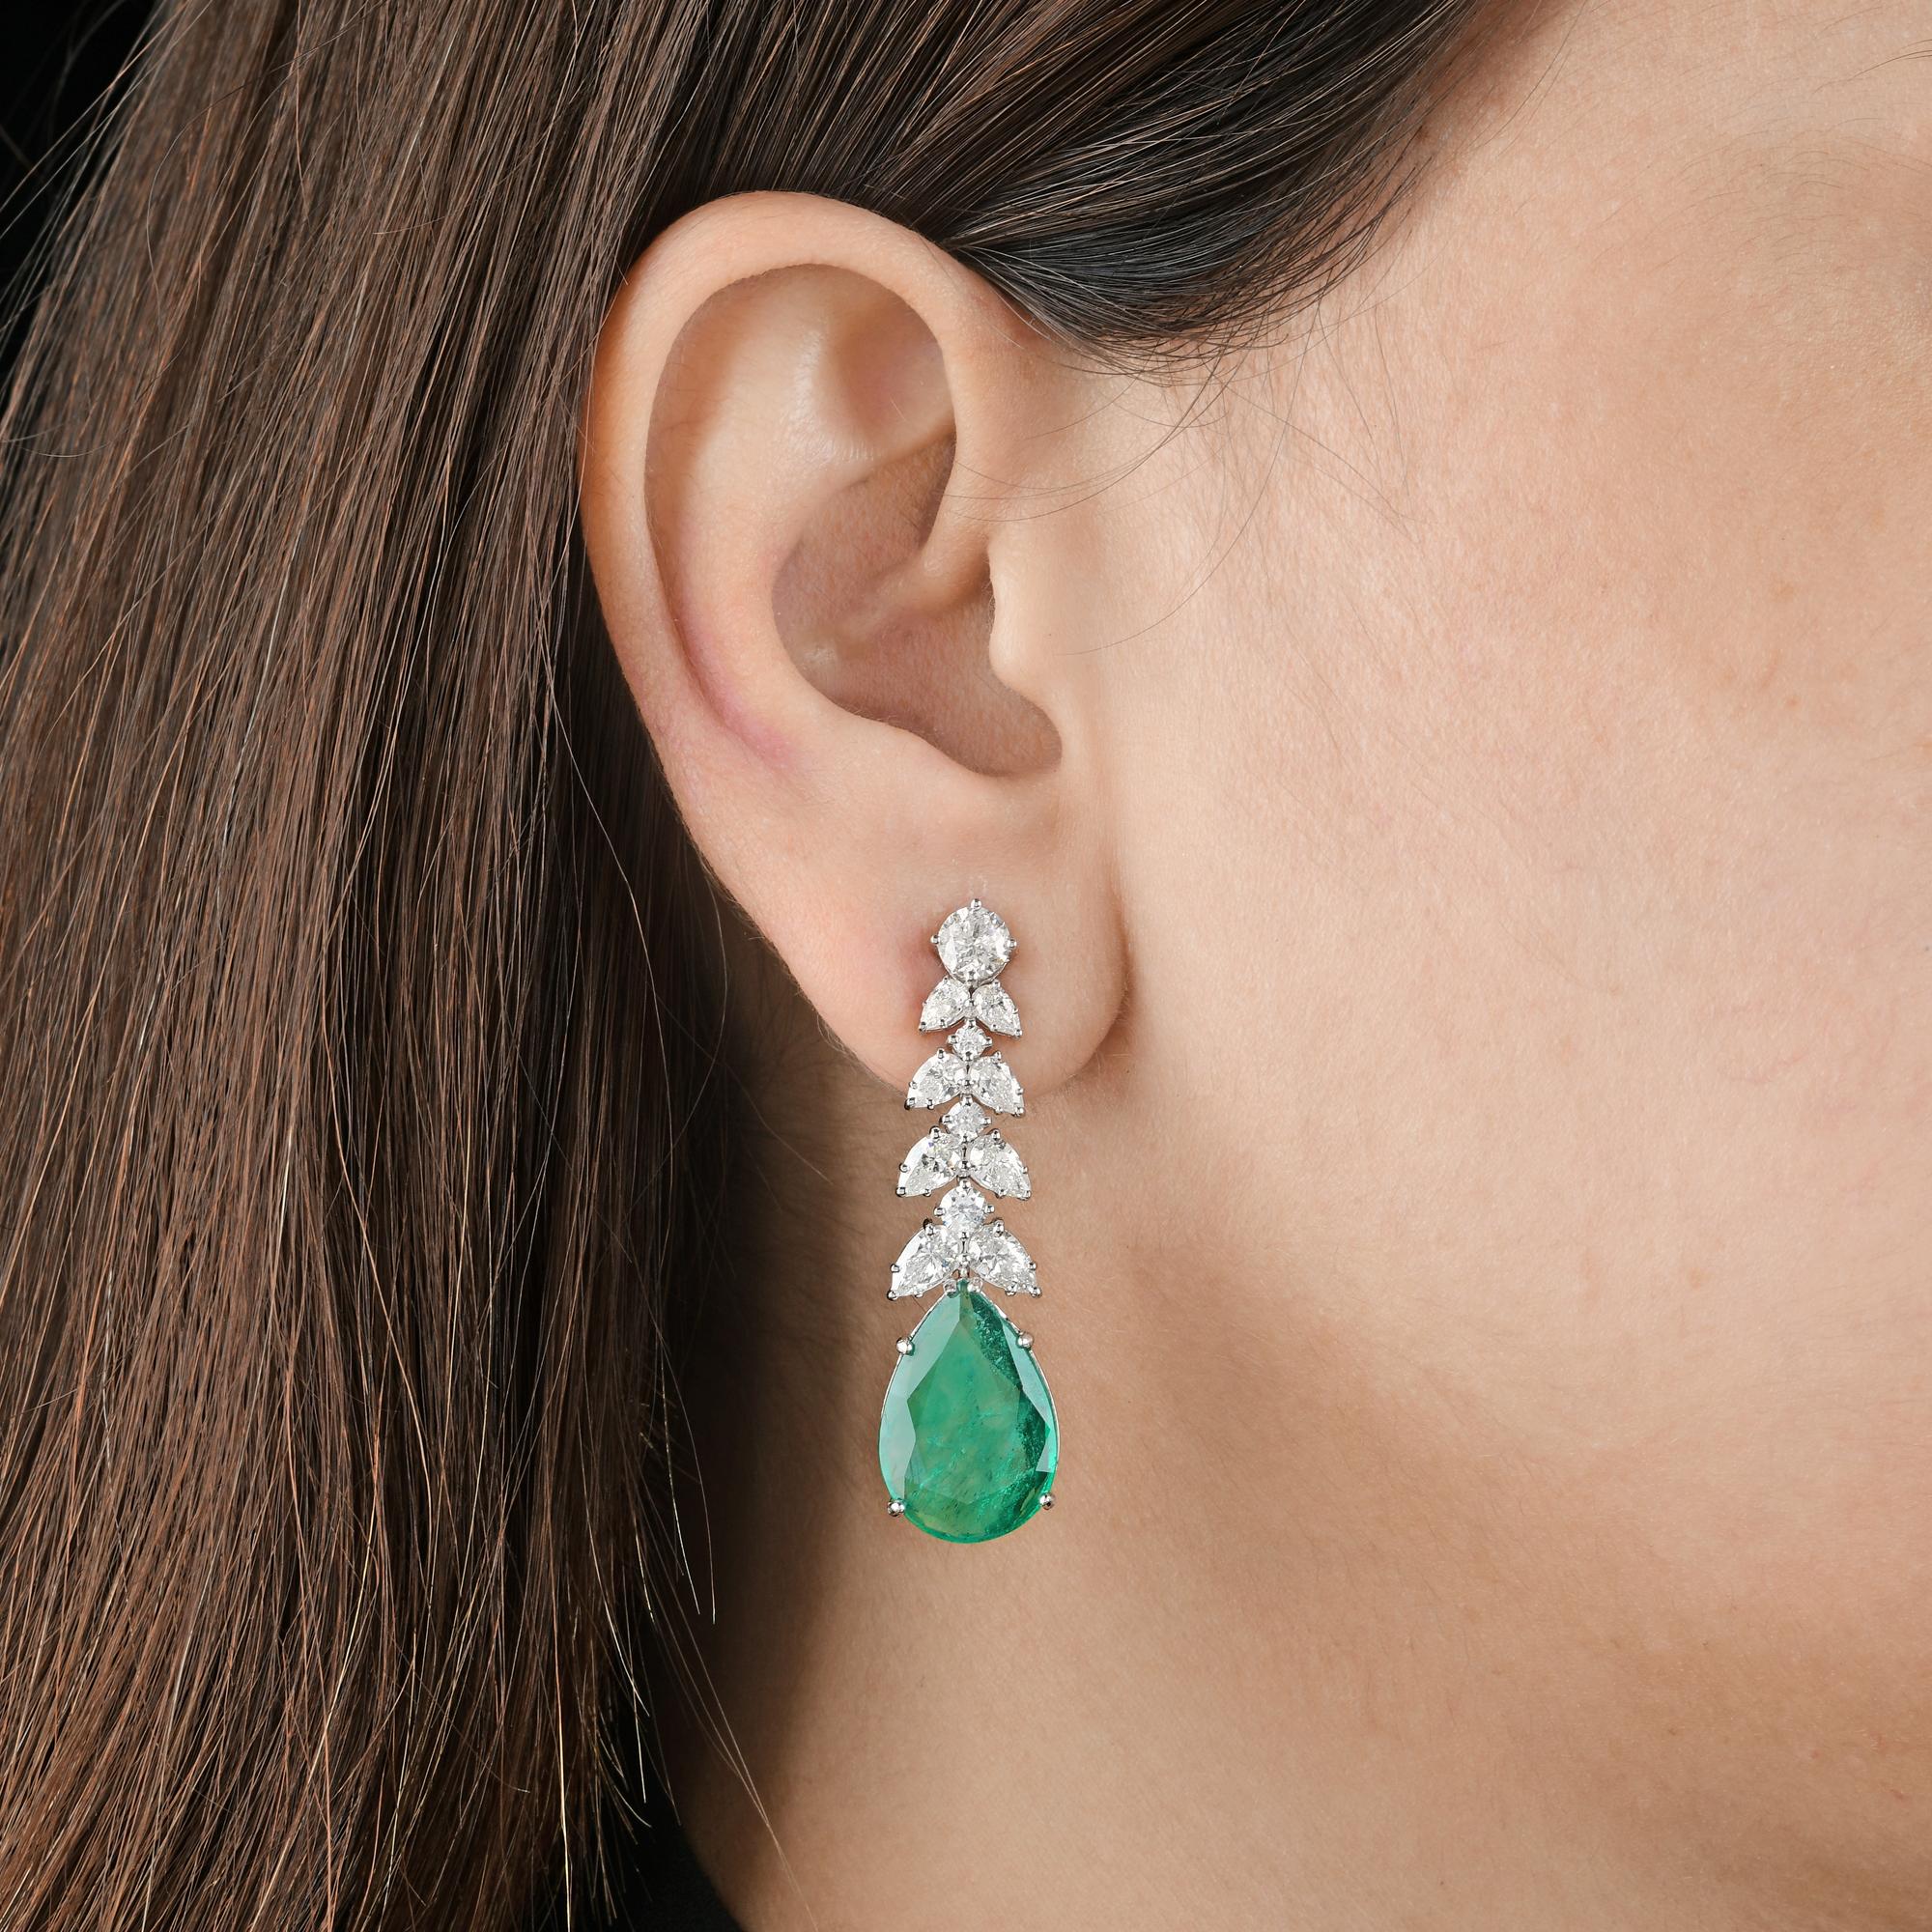 Modern Pear Zambian Emerald Gemstone Dangle Earrings Diamond 14k White Gold Jewelry For Sale